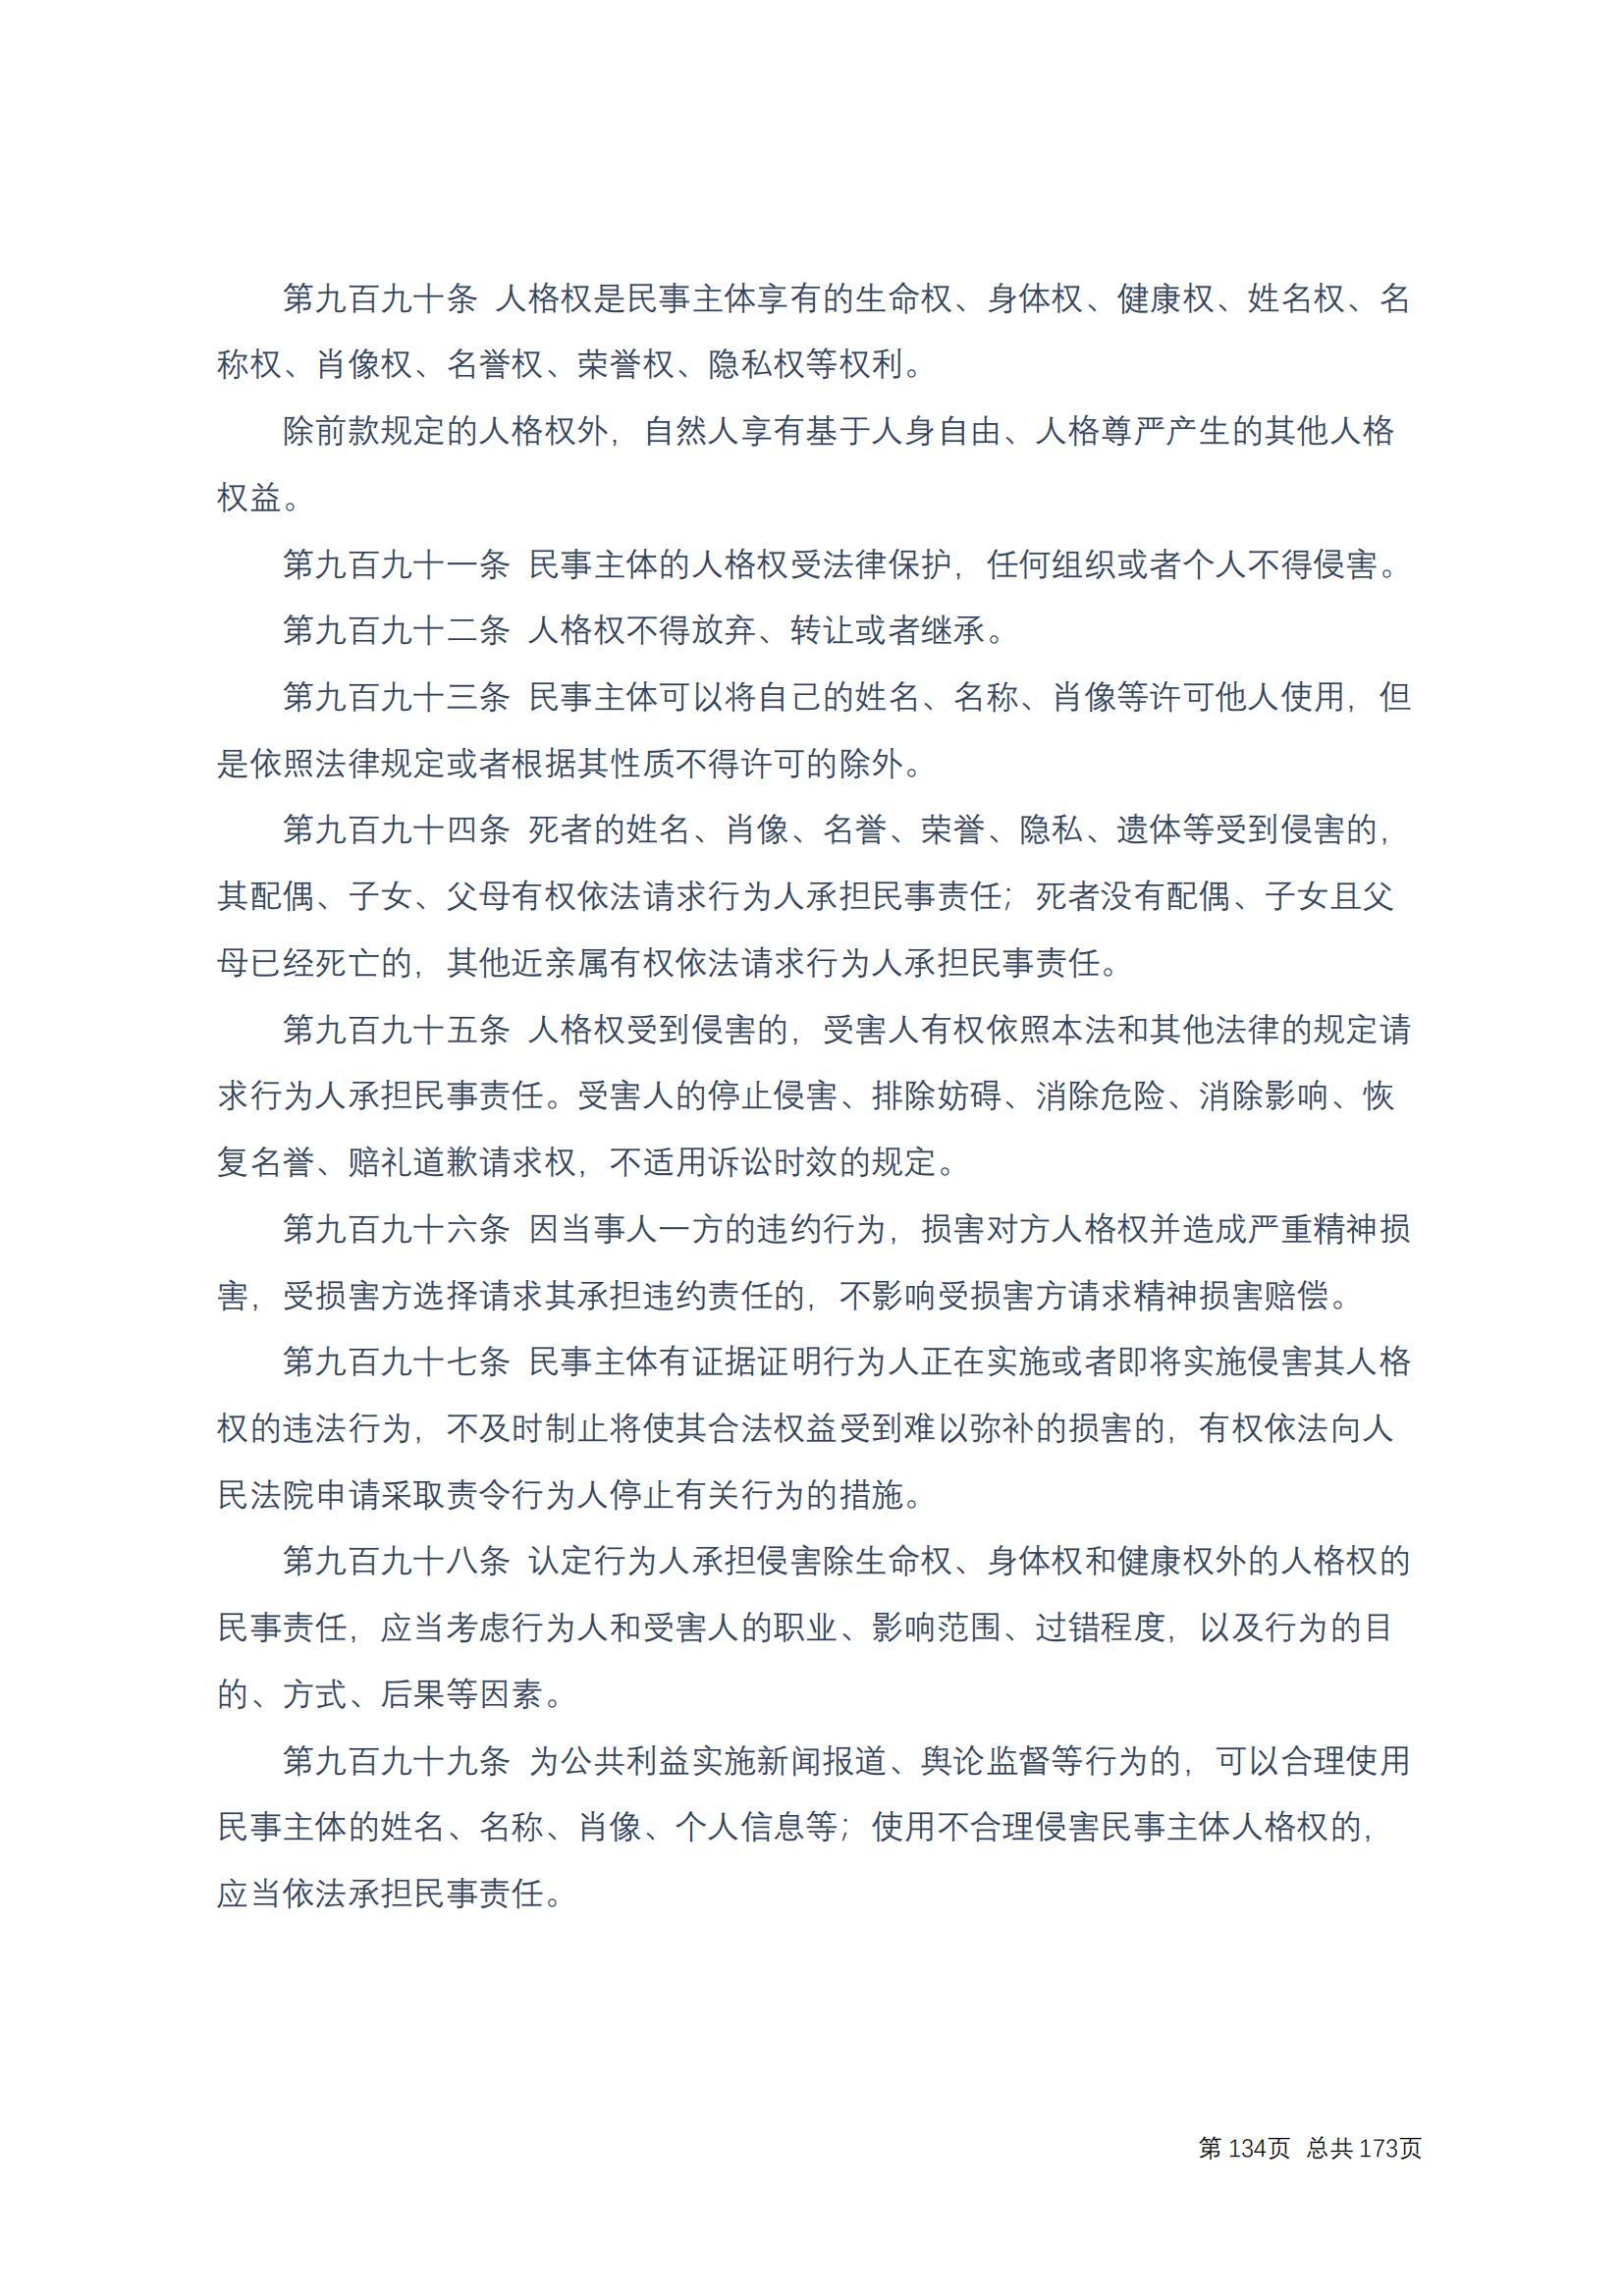 中华人民共和国民法典 修改过_133